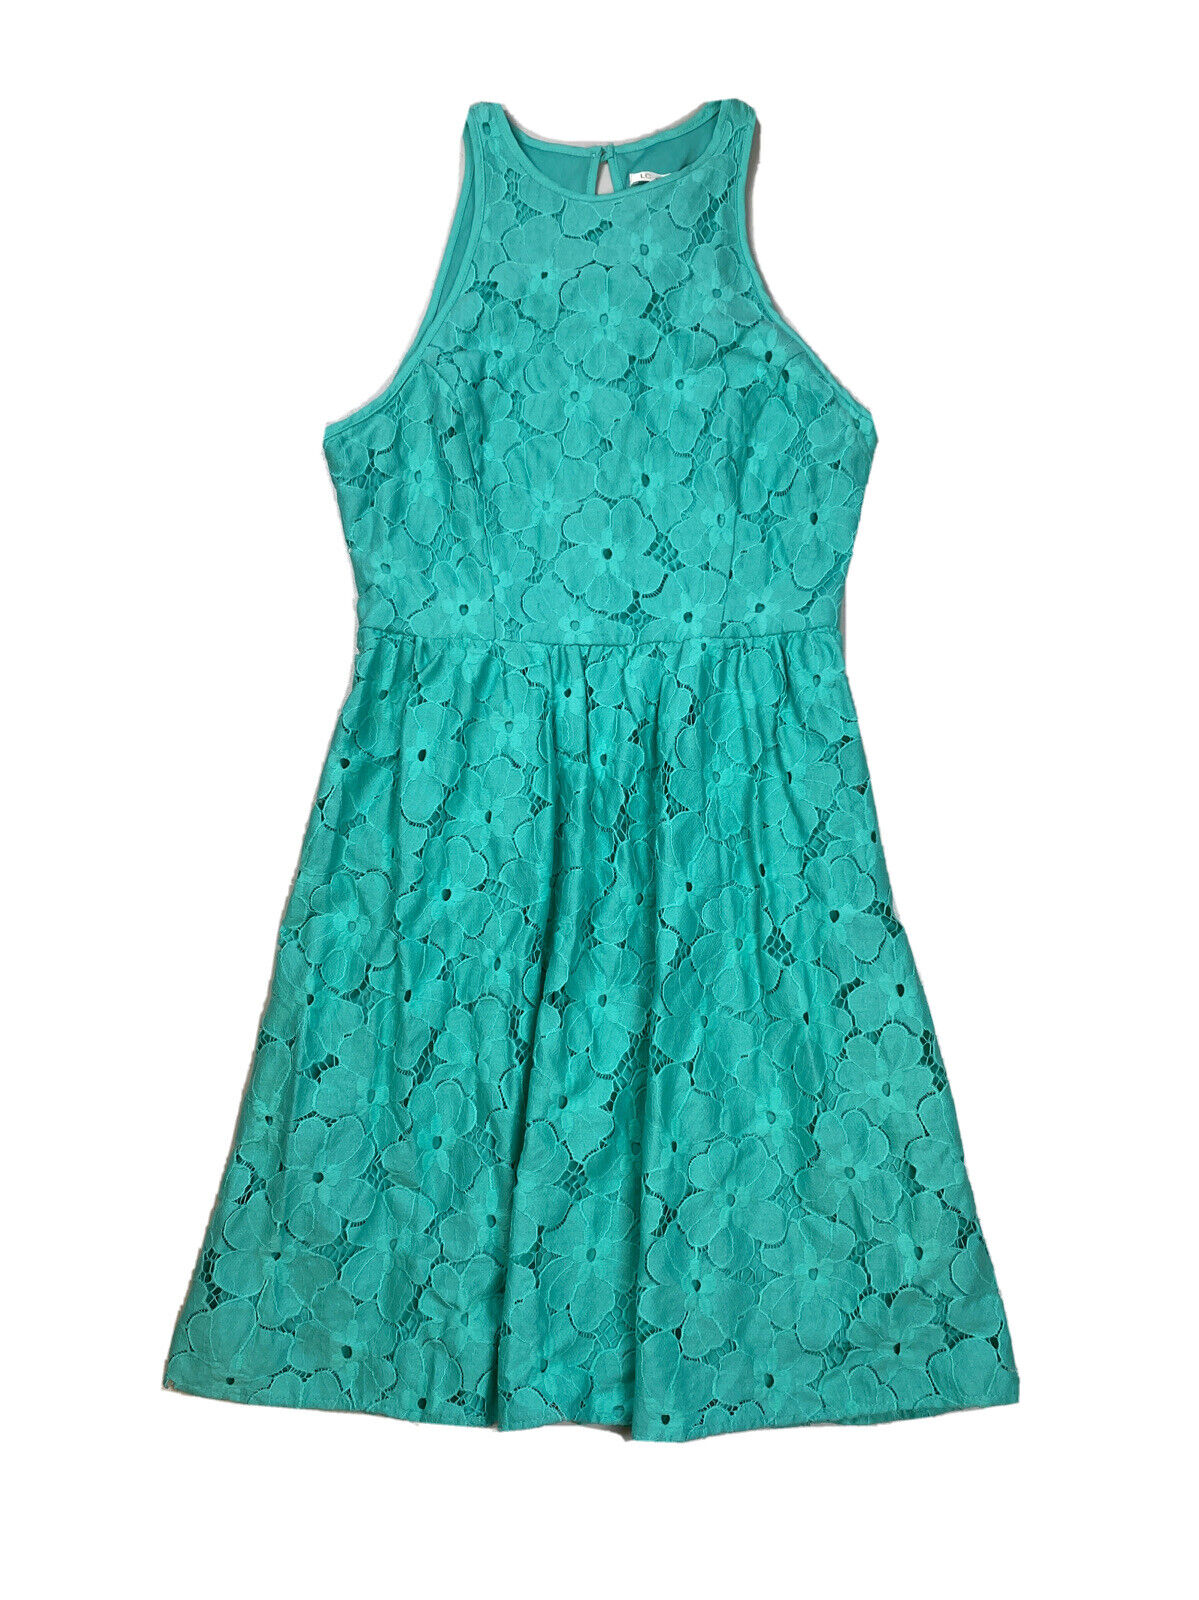 NEW Lauren Conrad Women's Blue Lace Sleeveless A-Line Dress - 2